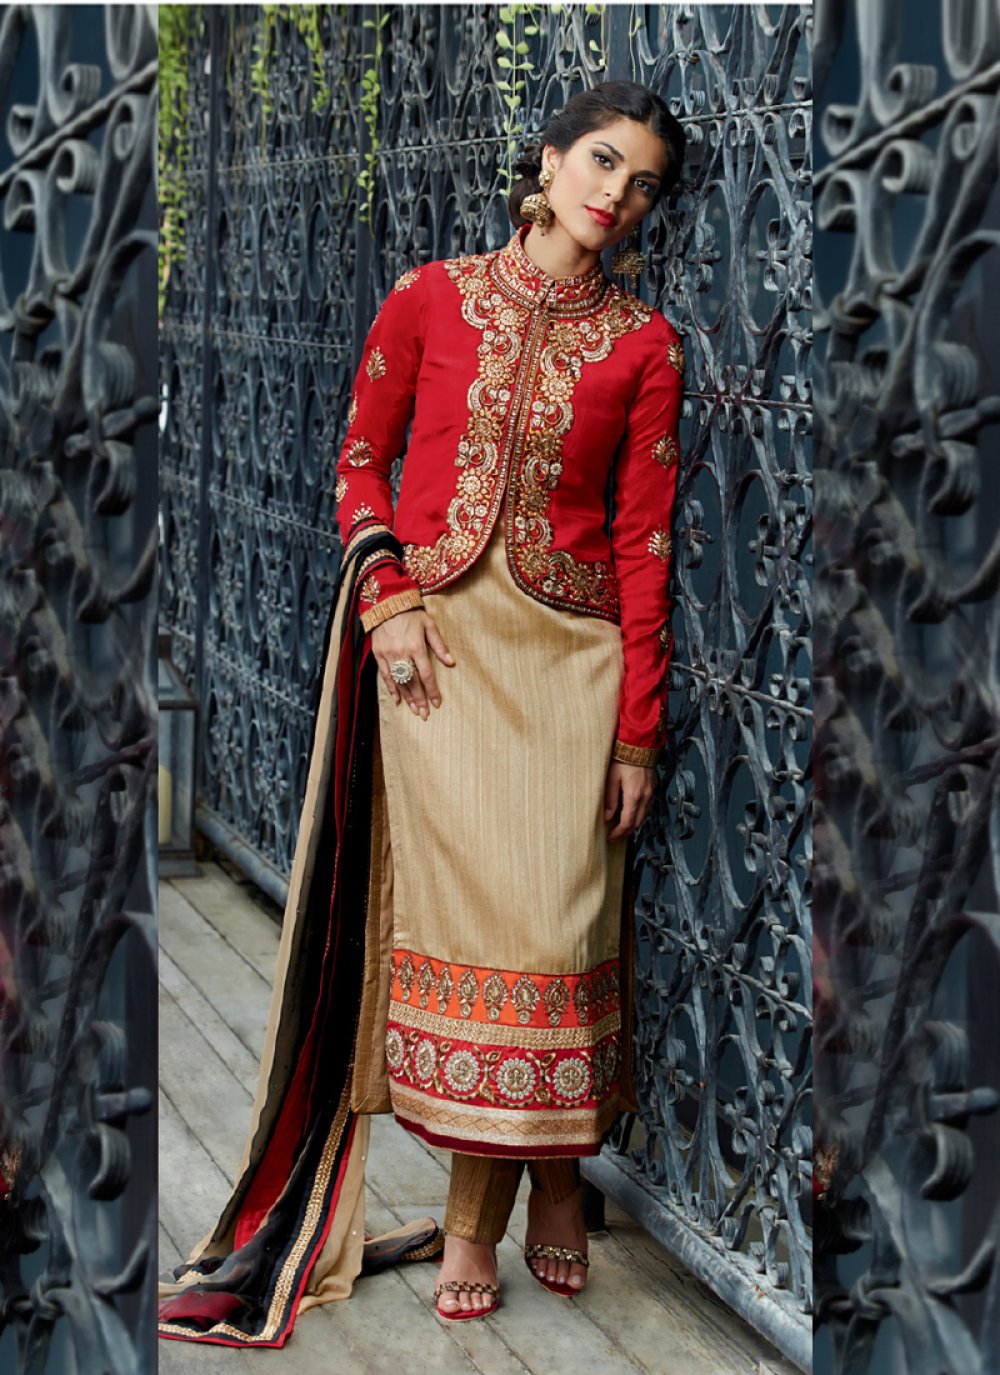 koti style pakistani dresses